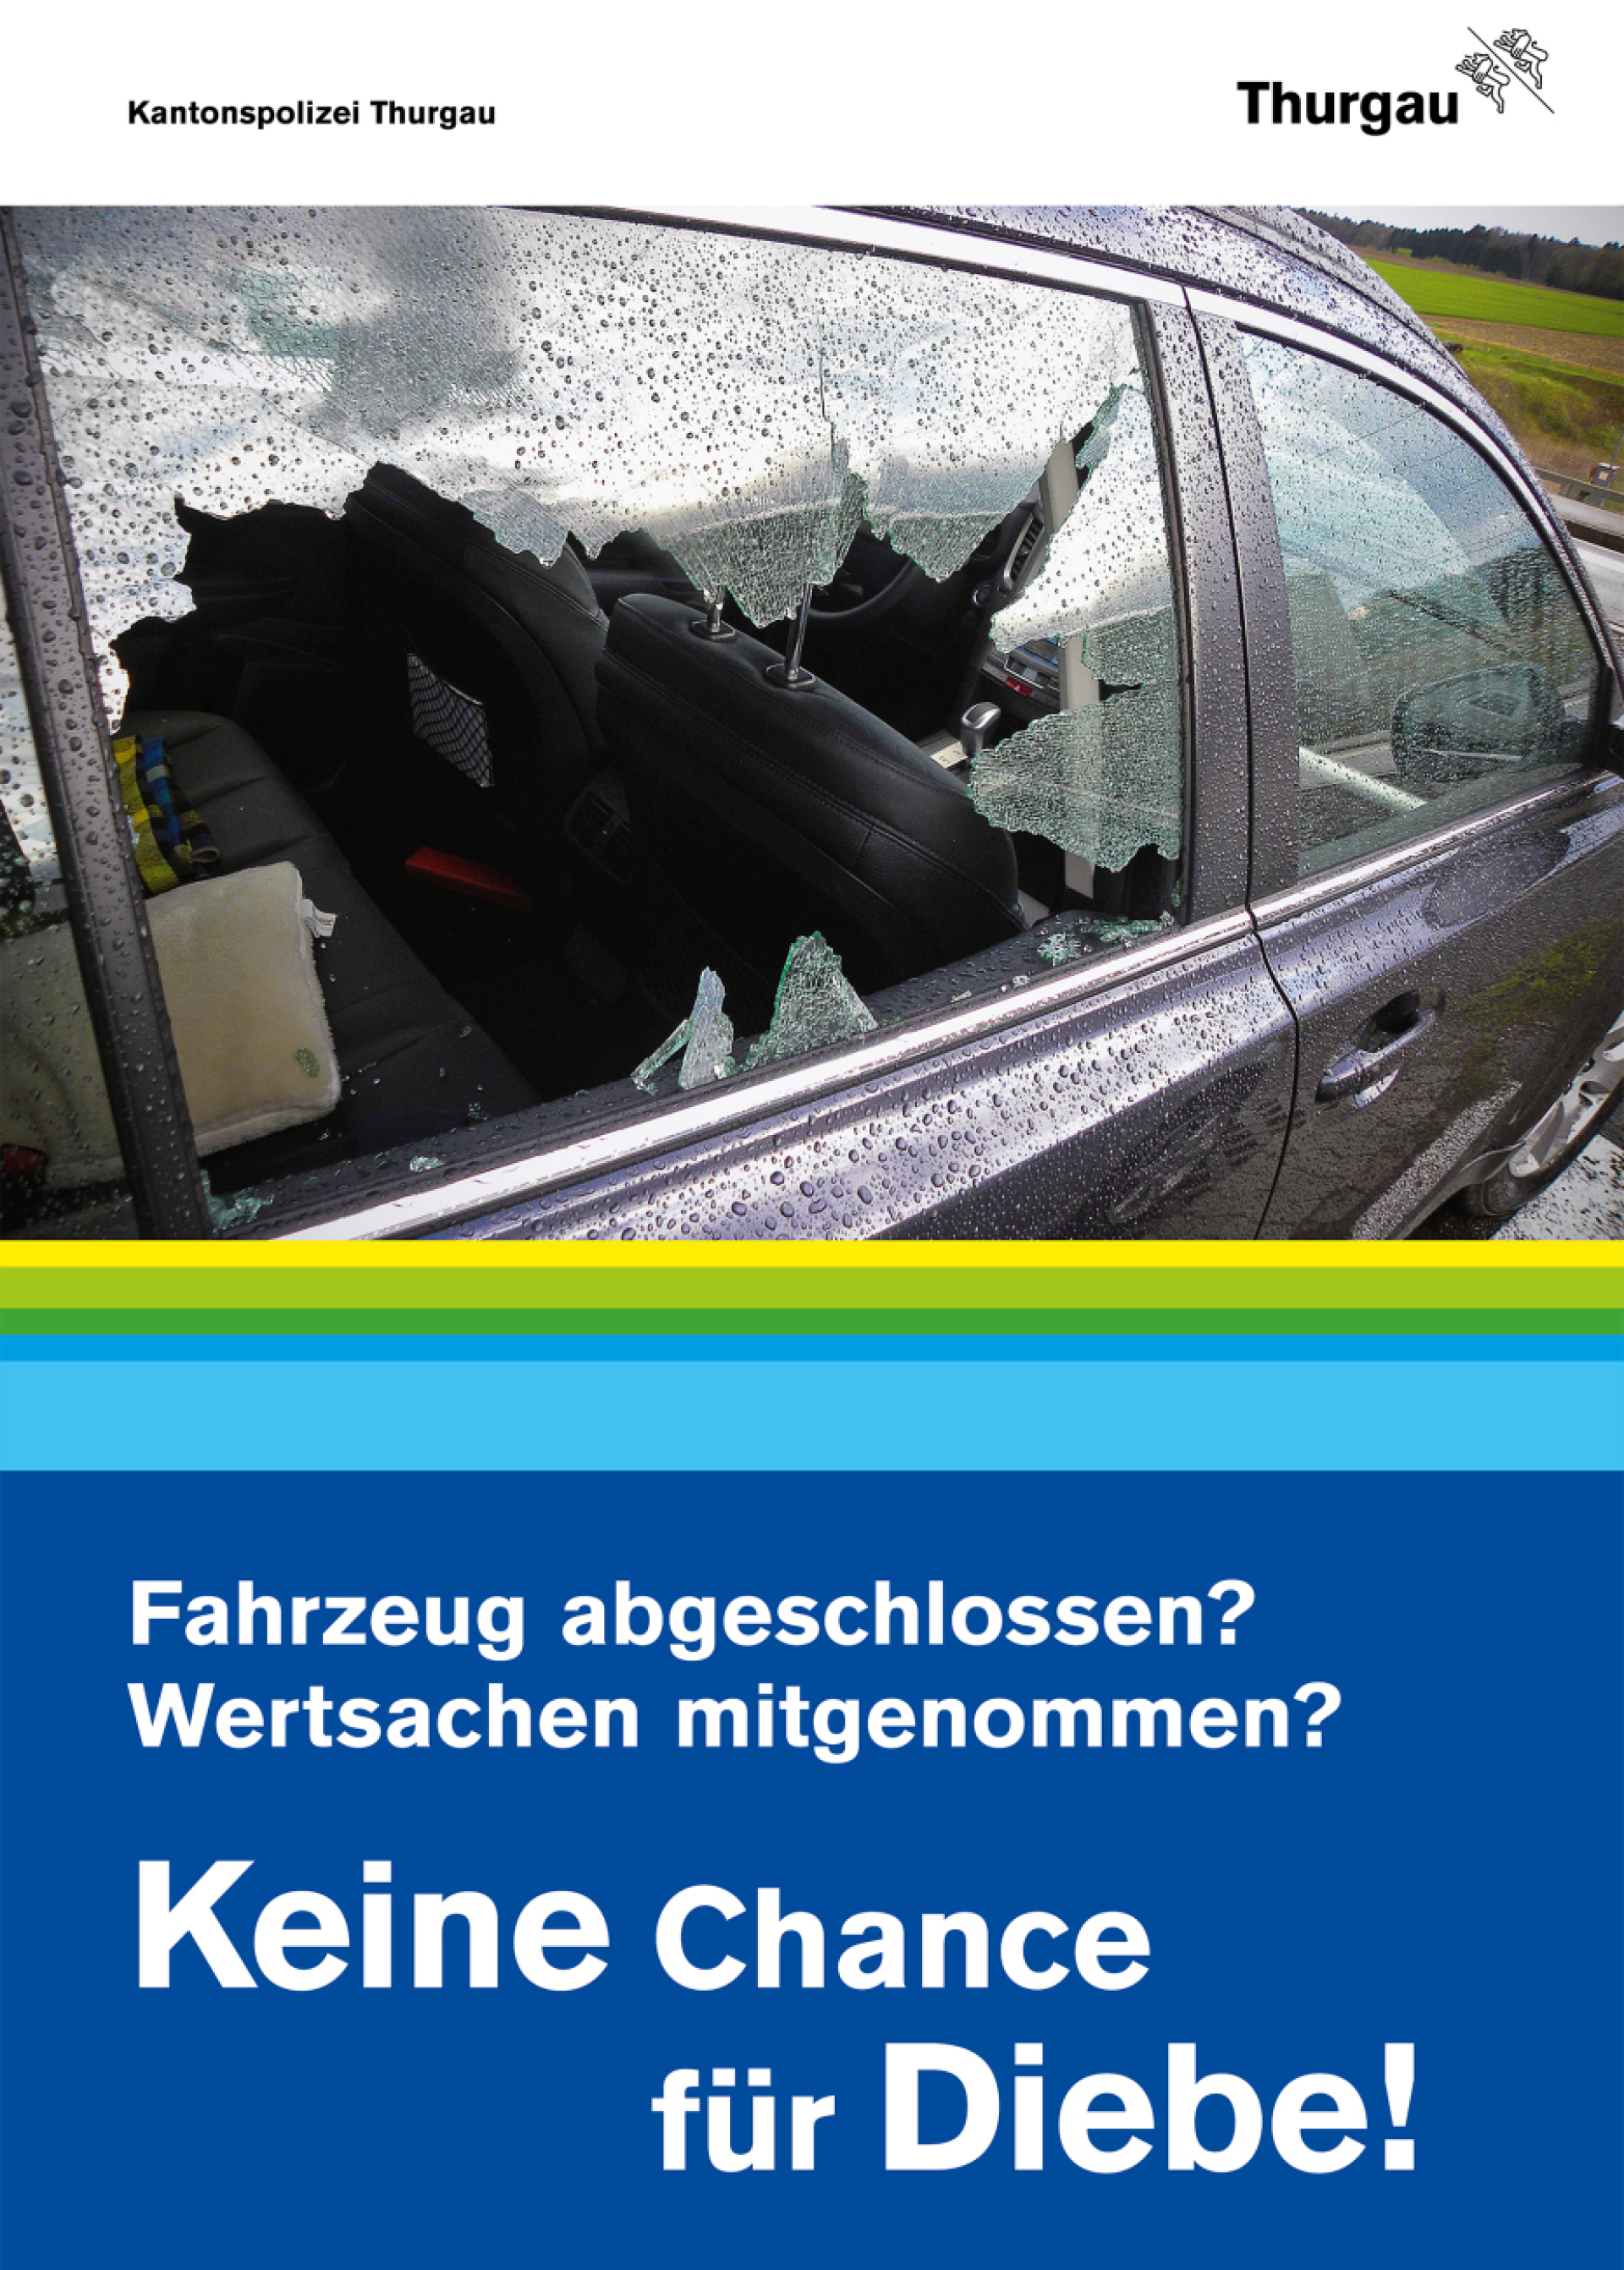 Die Bevölkerung kann mit der Befolgung einfacher Tipps mithelfen, den Kriminellen die «Arbeit» zu erschweren.  Bild: Kantonspolizei Thurgau